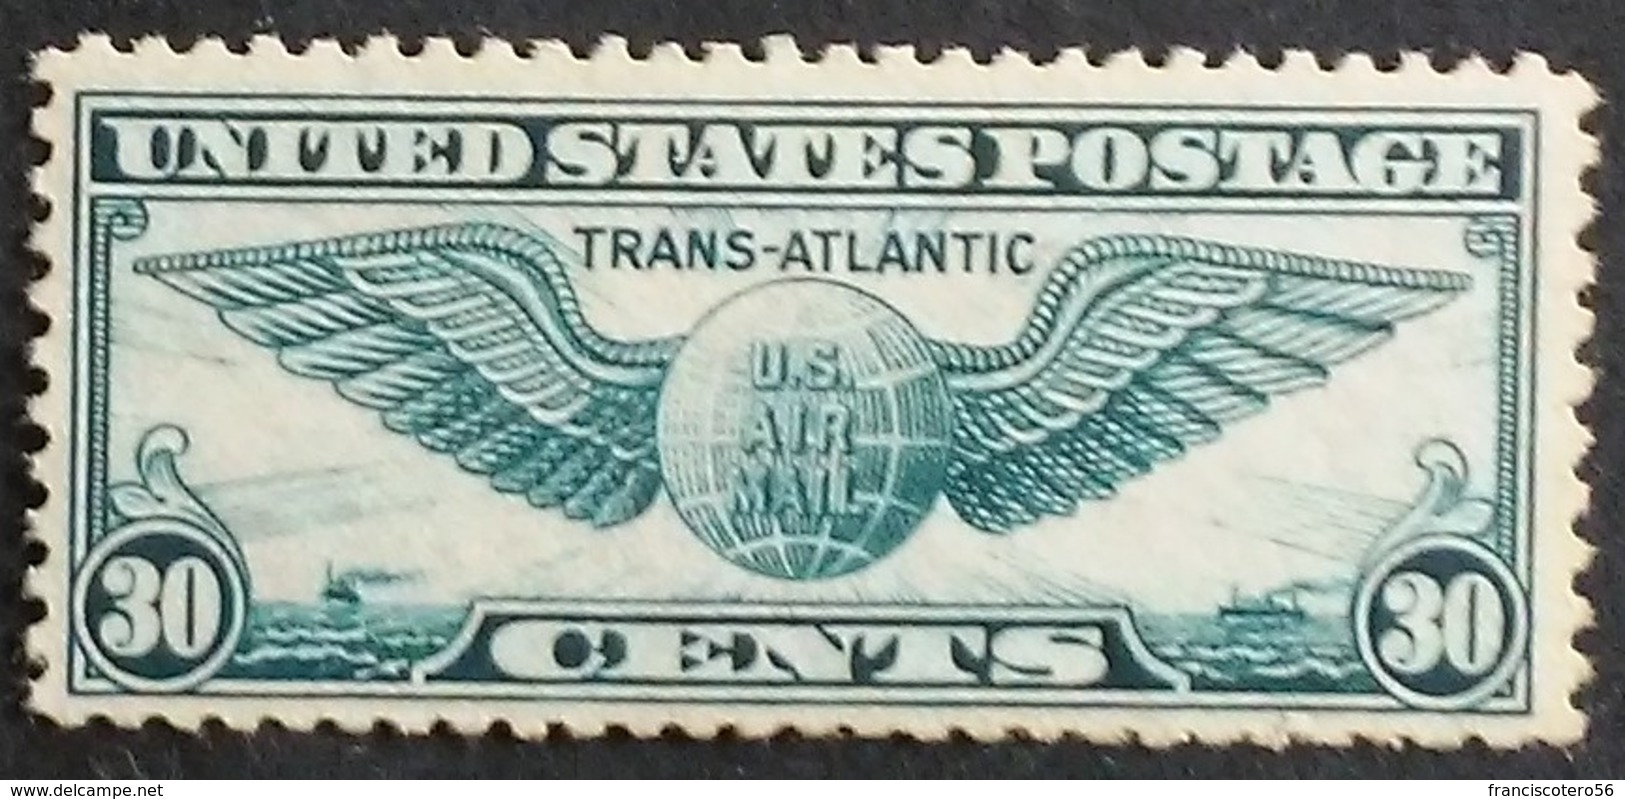 Estados - Unidos: Año. 1939 - Av. (1º- Vuelo Trans - Atlantico. Nueva - York. Marsella). - 1b. 1918-1940 Nuevos